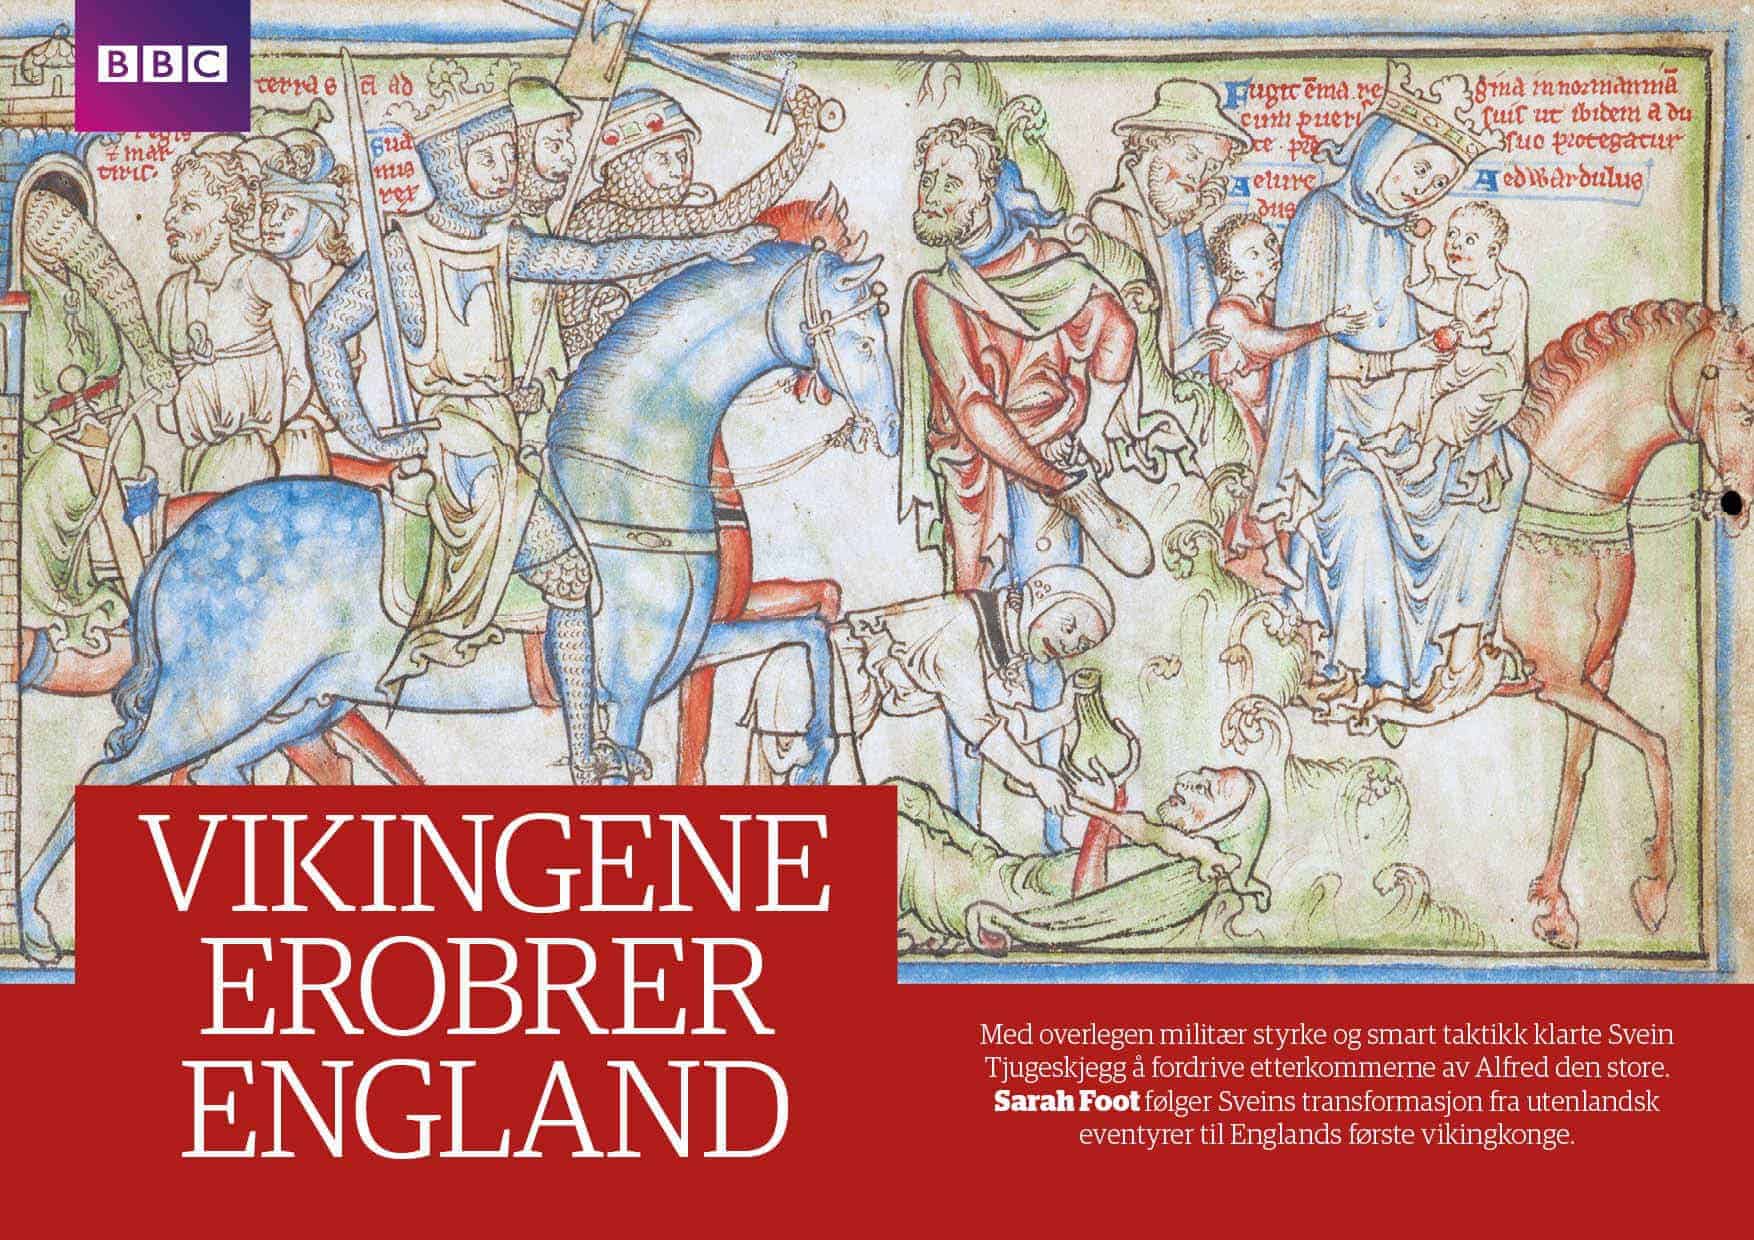 Vikingene erobrer England